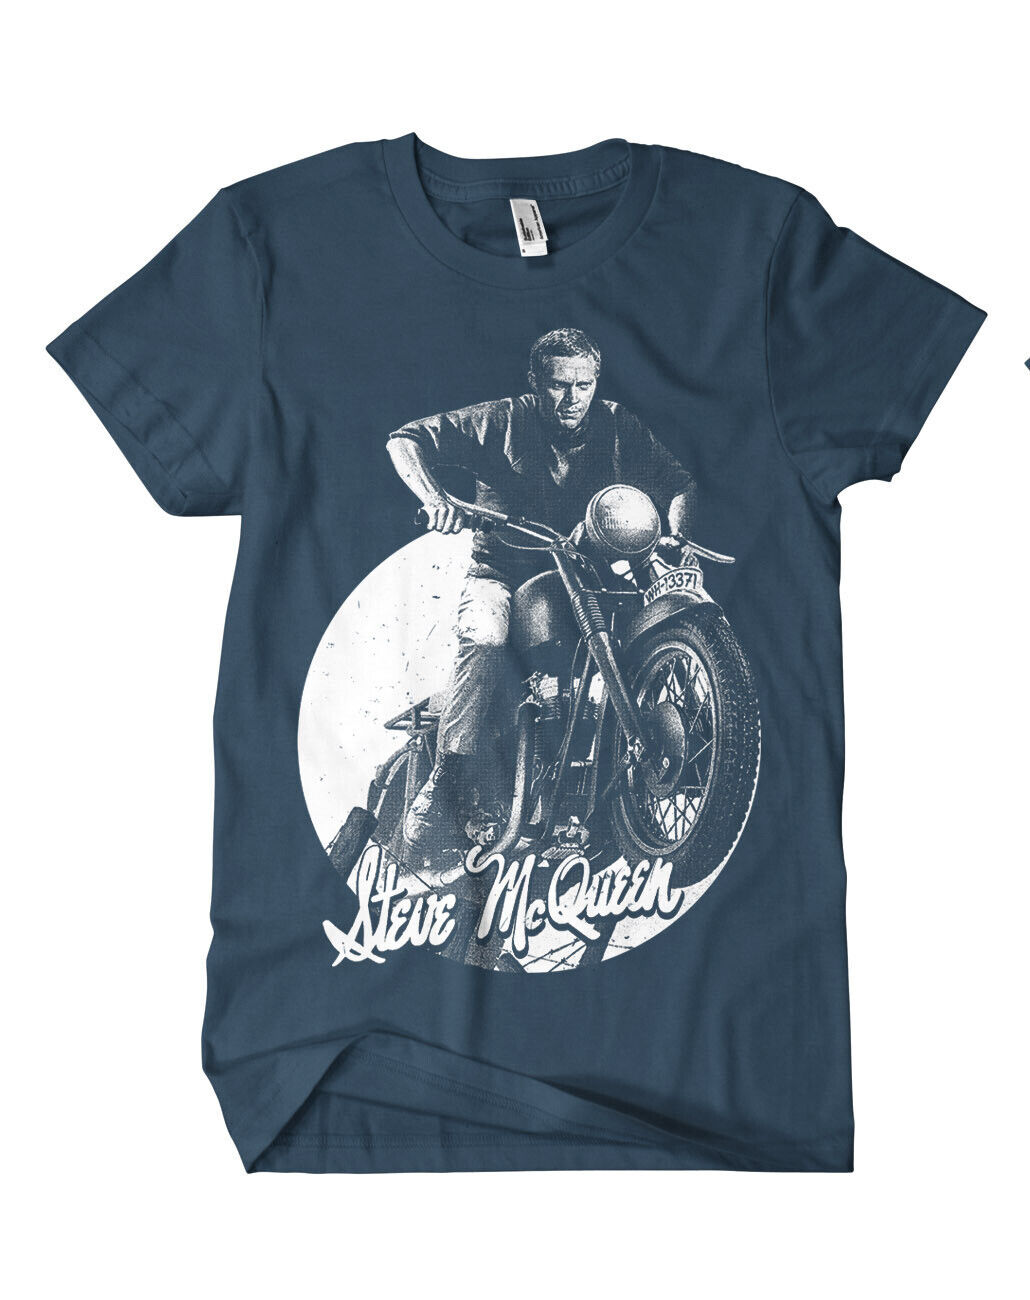 Steve McQueen Ketten T-Shirt Bullit LeMans Triumph Legende Speed King of Cool